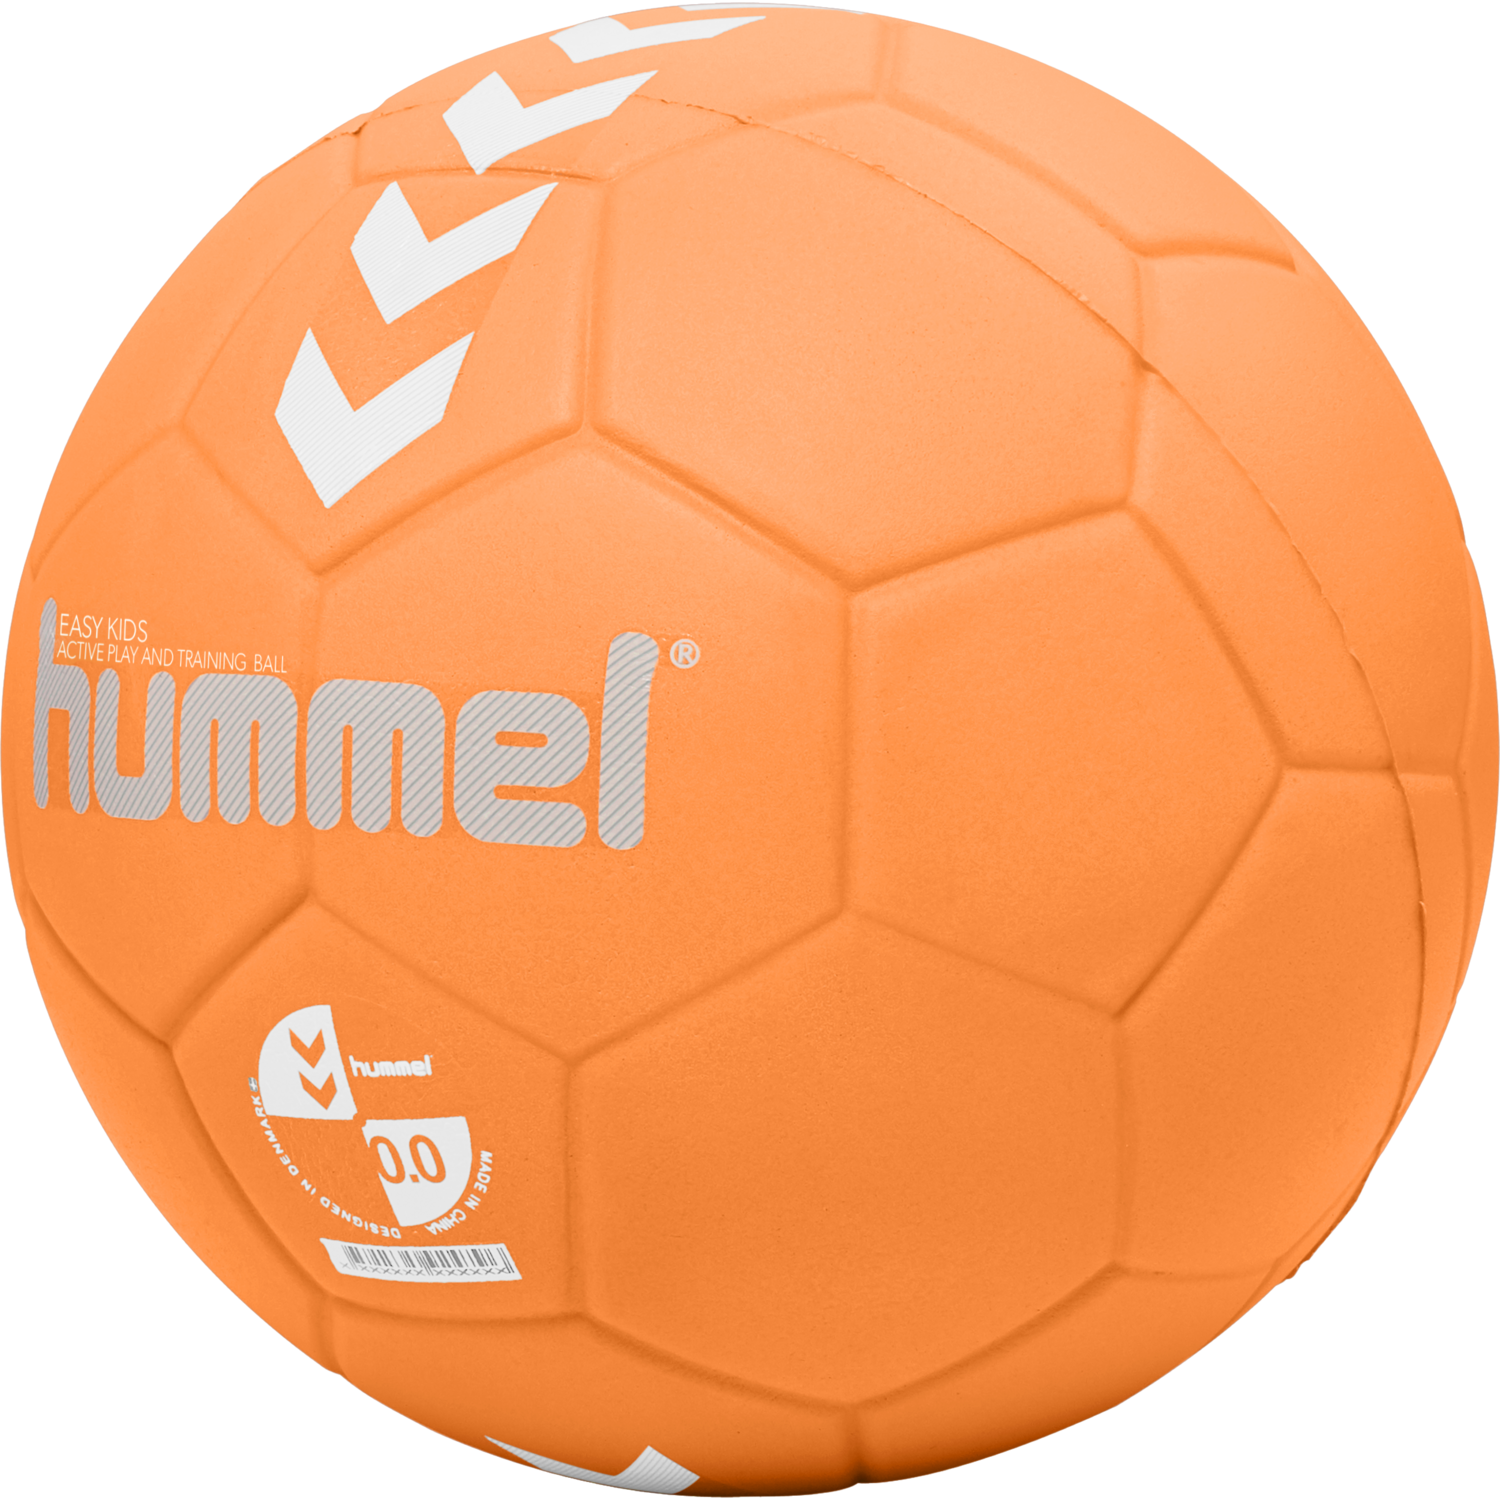 HUMMEL ELITE BALL Gr 1.5-3 NEU 40€ top grip handball trainingsball trickwurf 